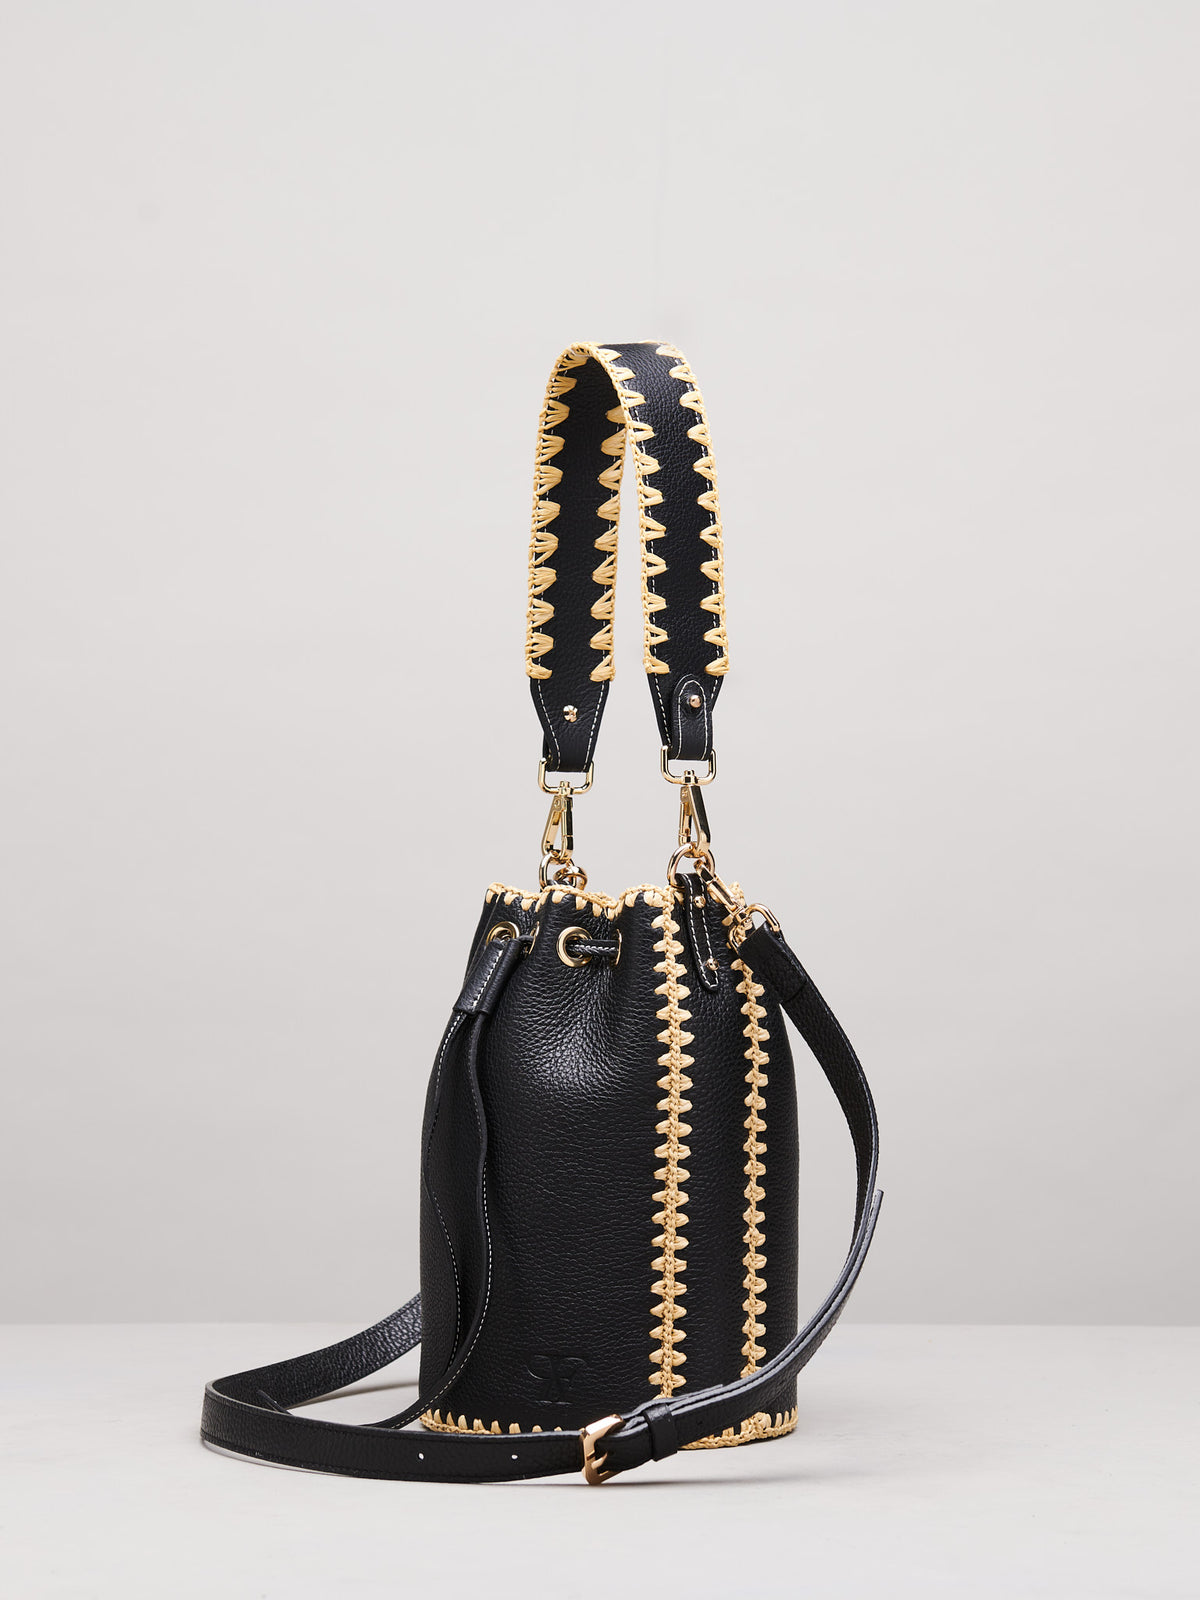 Emma Grande Black Handbag